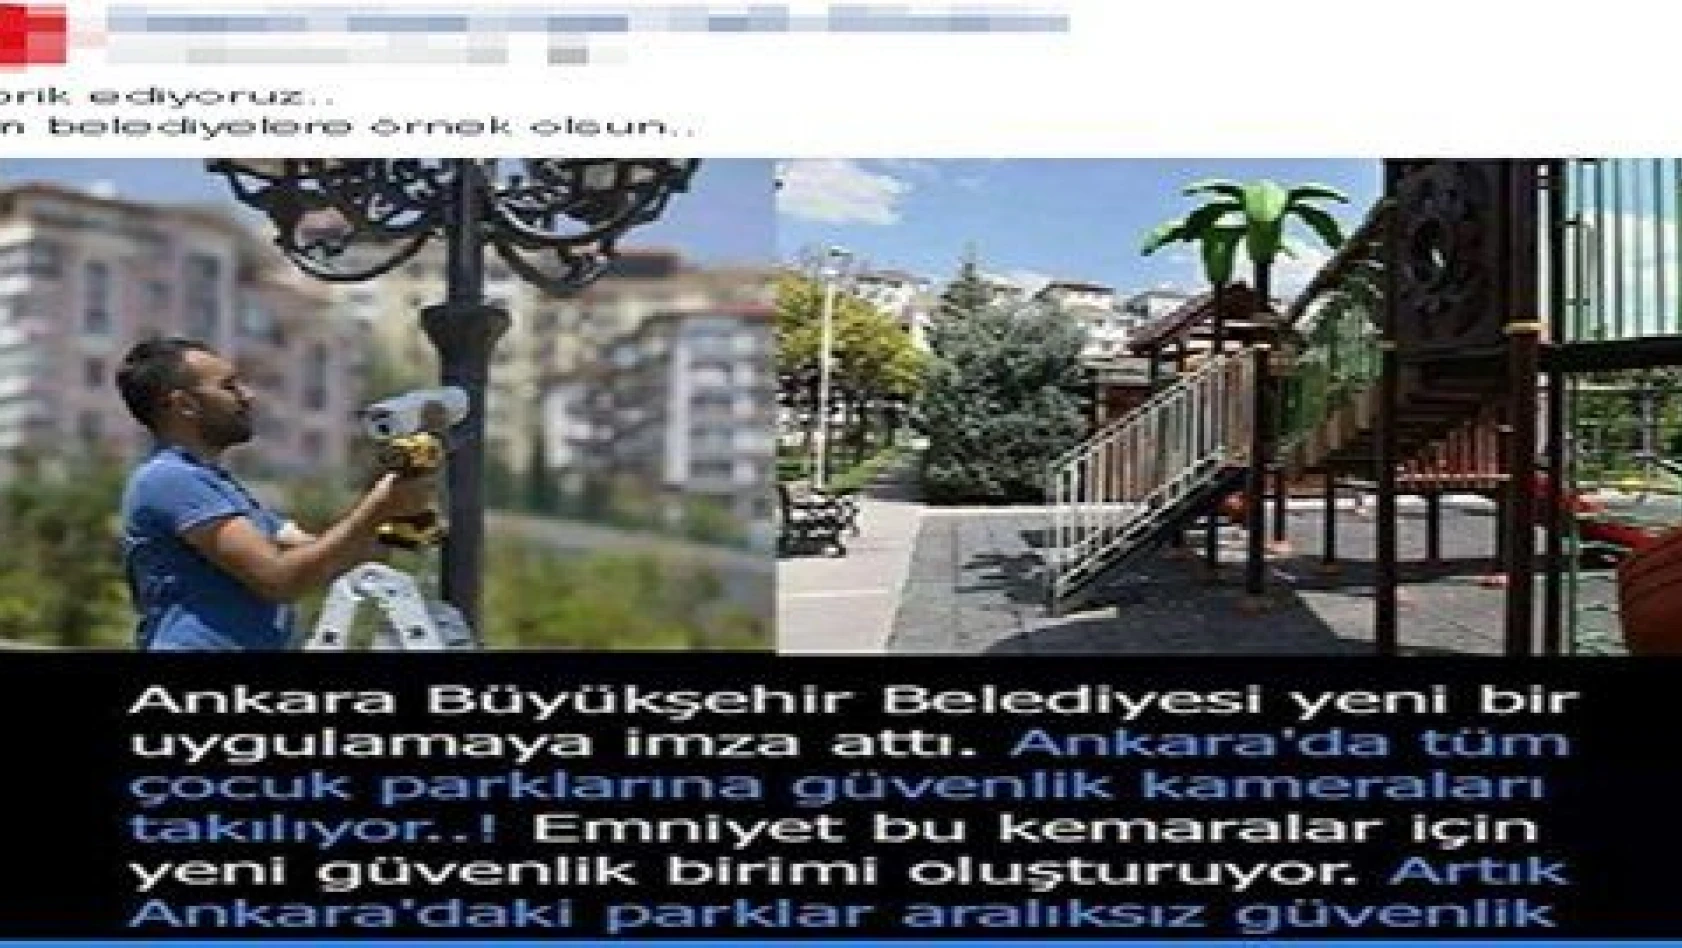 Ankara'daki uygulama Kayseri için de istendi